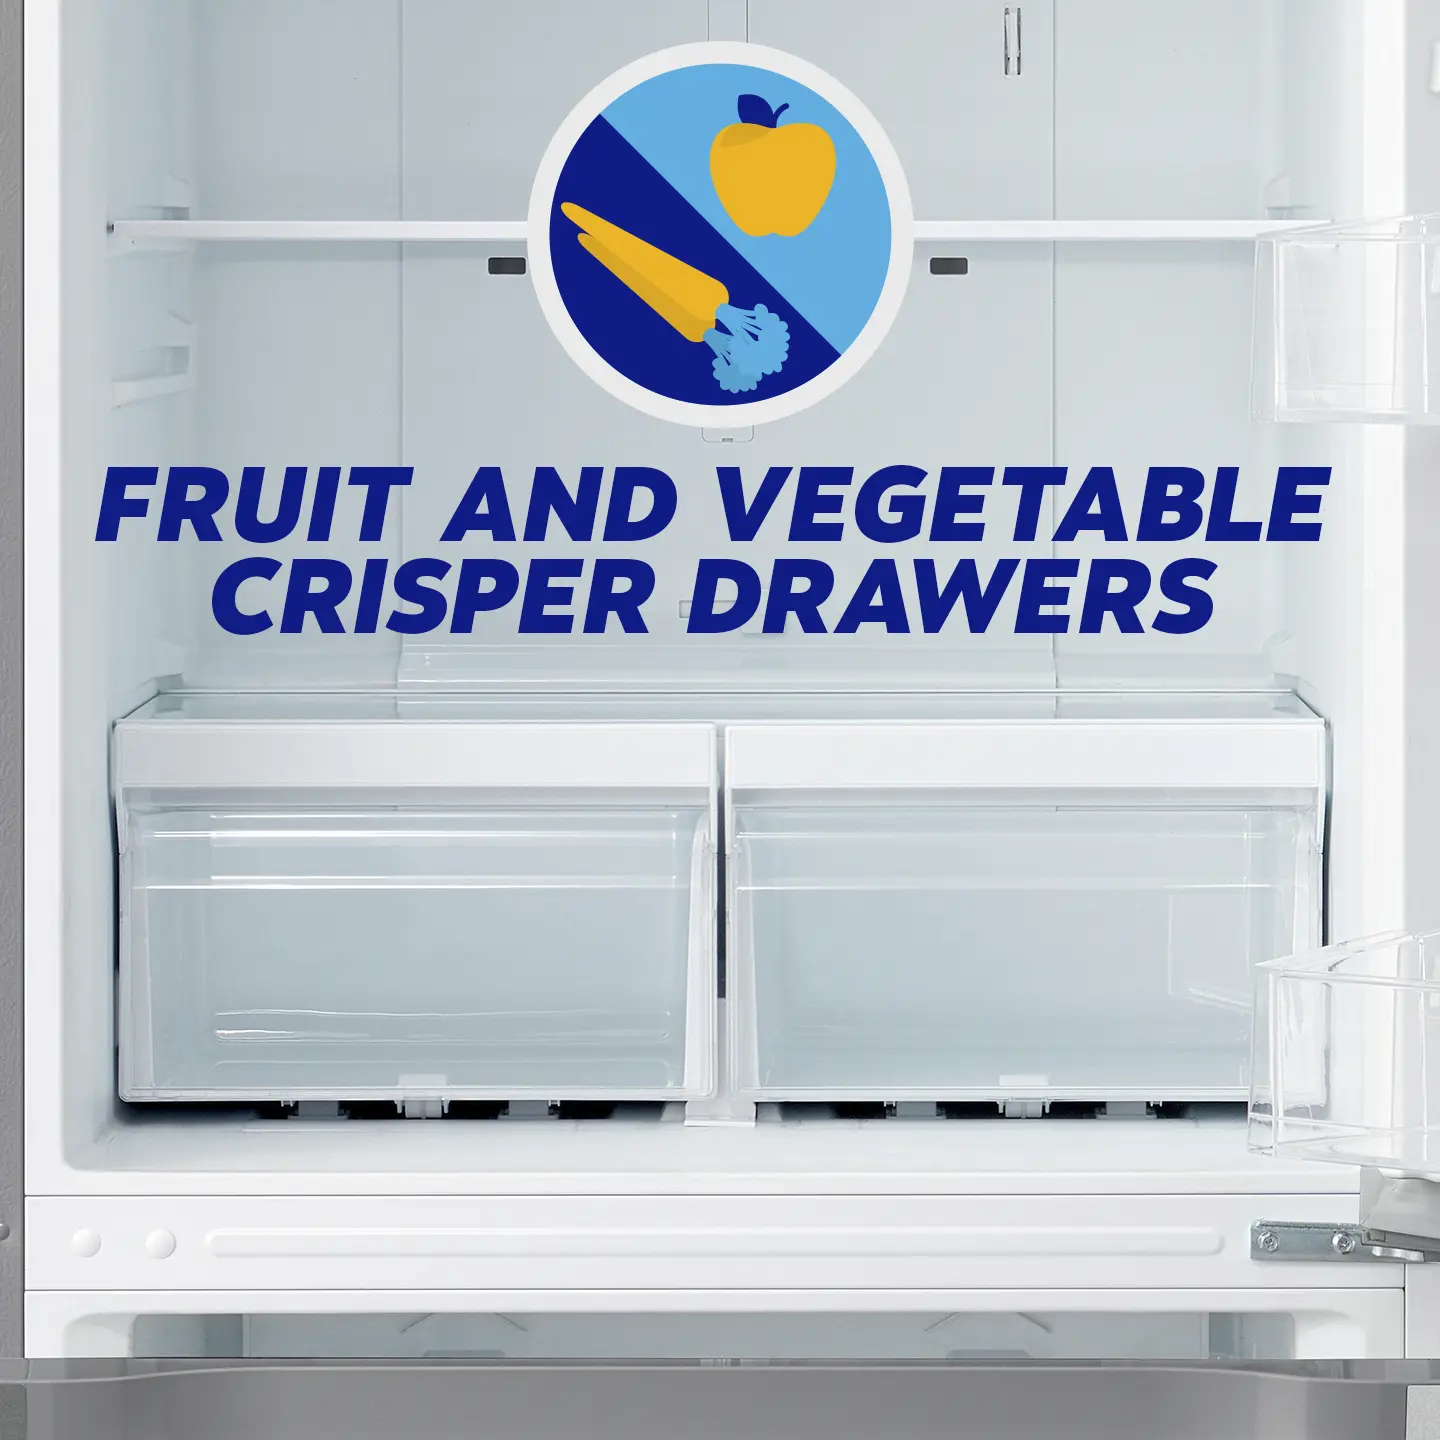 Fruit and vegetable crisper drawers